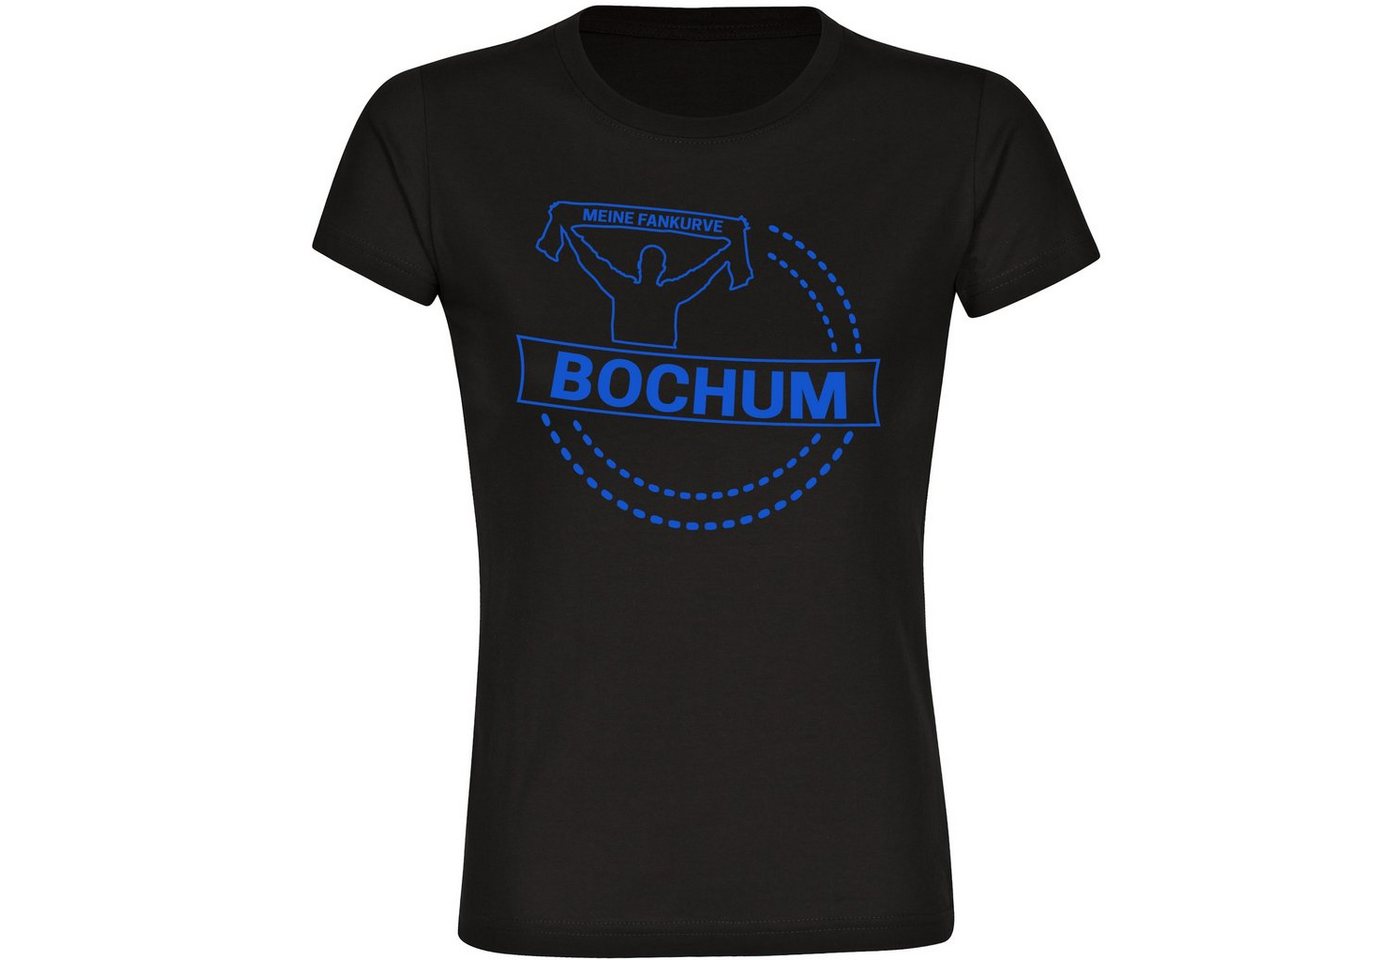 multifanshop T-Shirt Damen Bochum - Meine Fankurve - Frauen von multifanshop